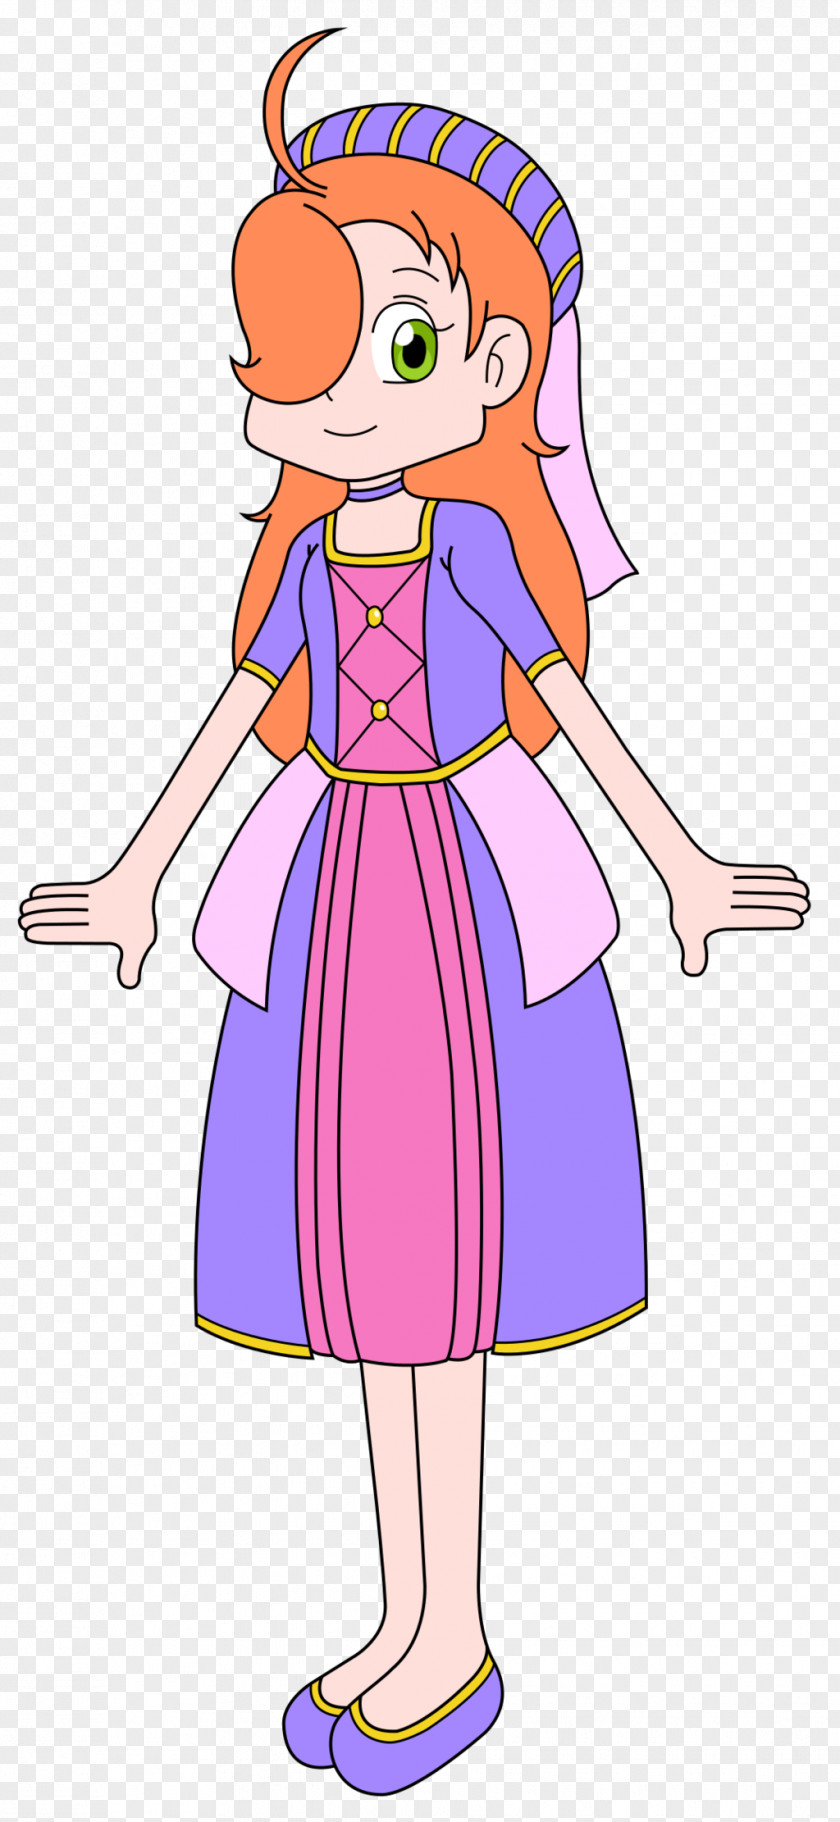 Princess Dress Pokémon Trainer Character Clip Art PNG